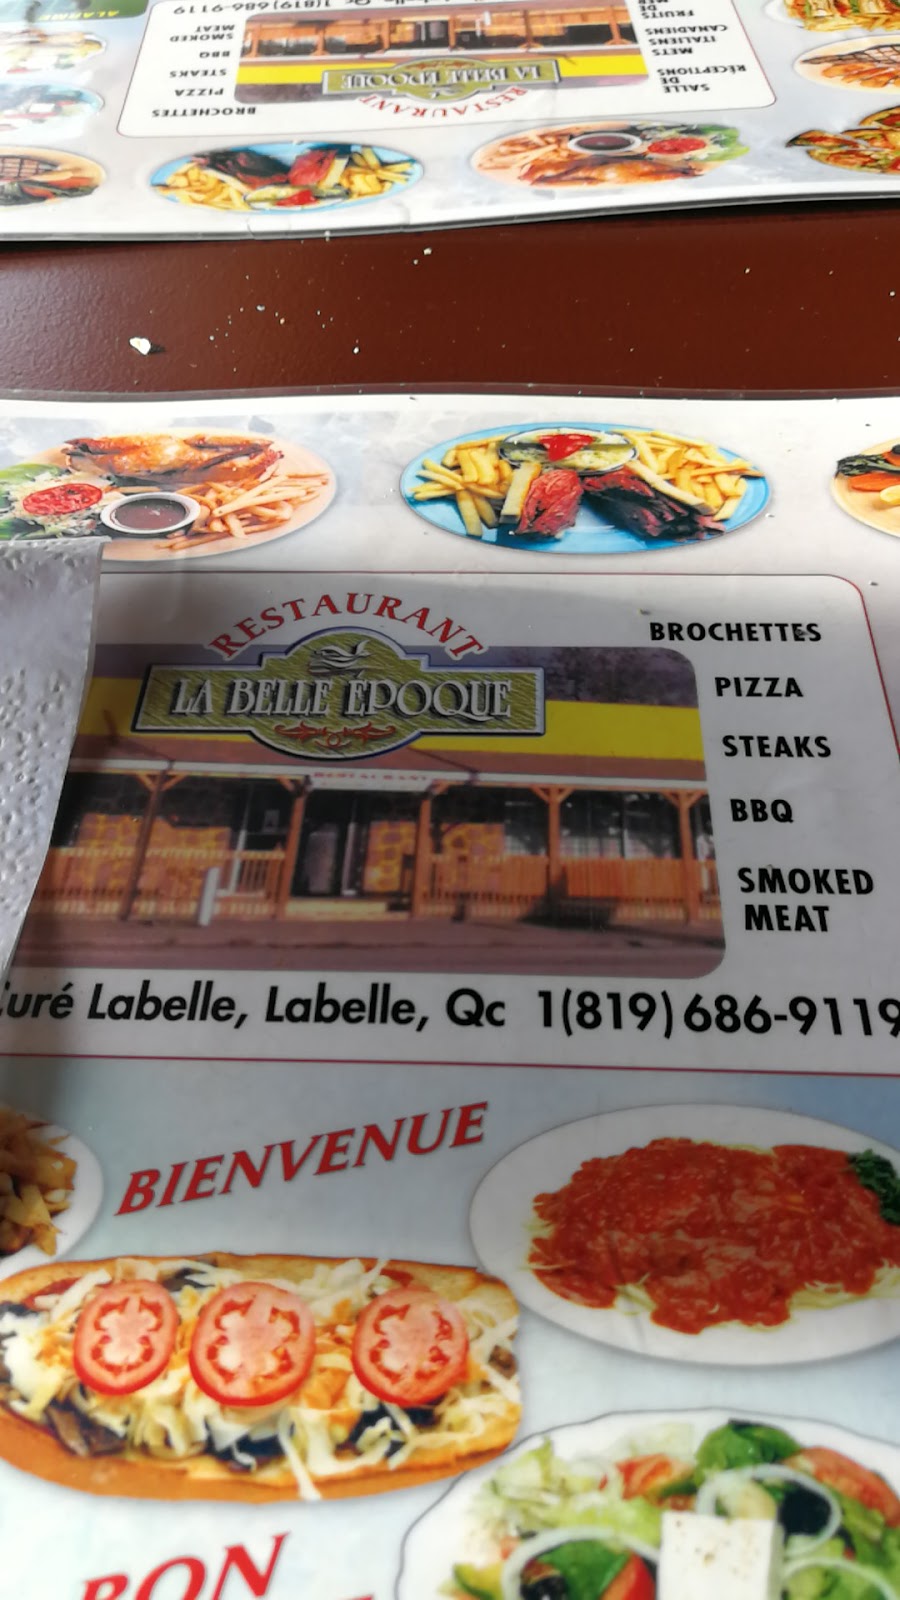 Restaurant Labelle Epoque | 7330 Boulevard du Curé Labelle, Labelle, QC J0T 1H0, Canada | Phone: (819) 686-9119